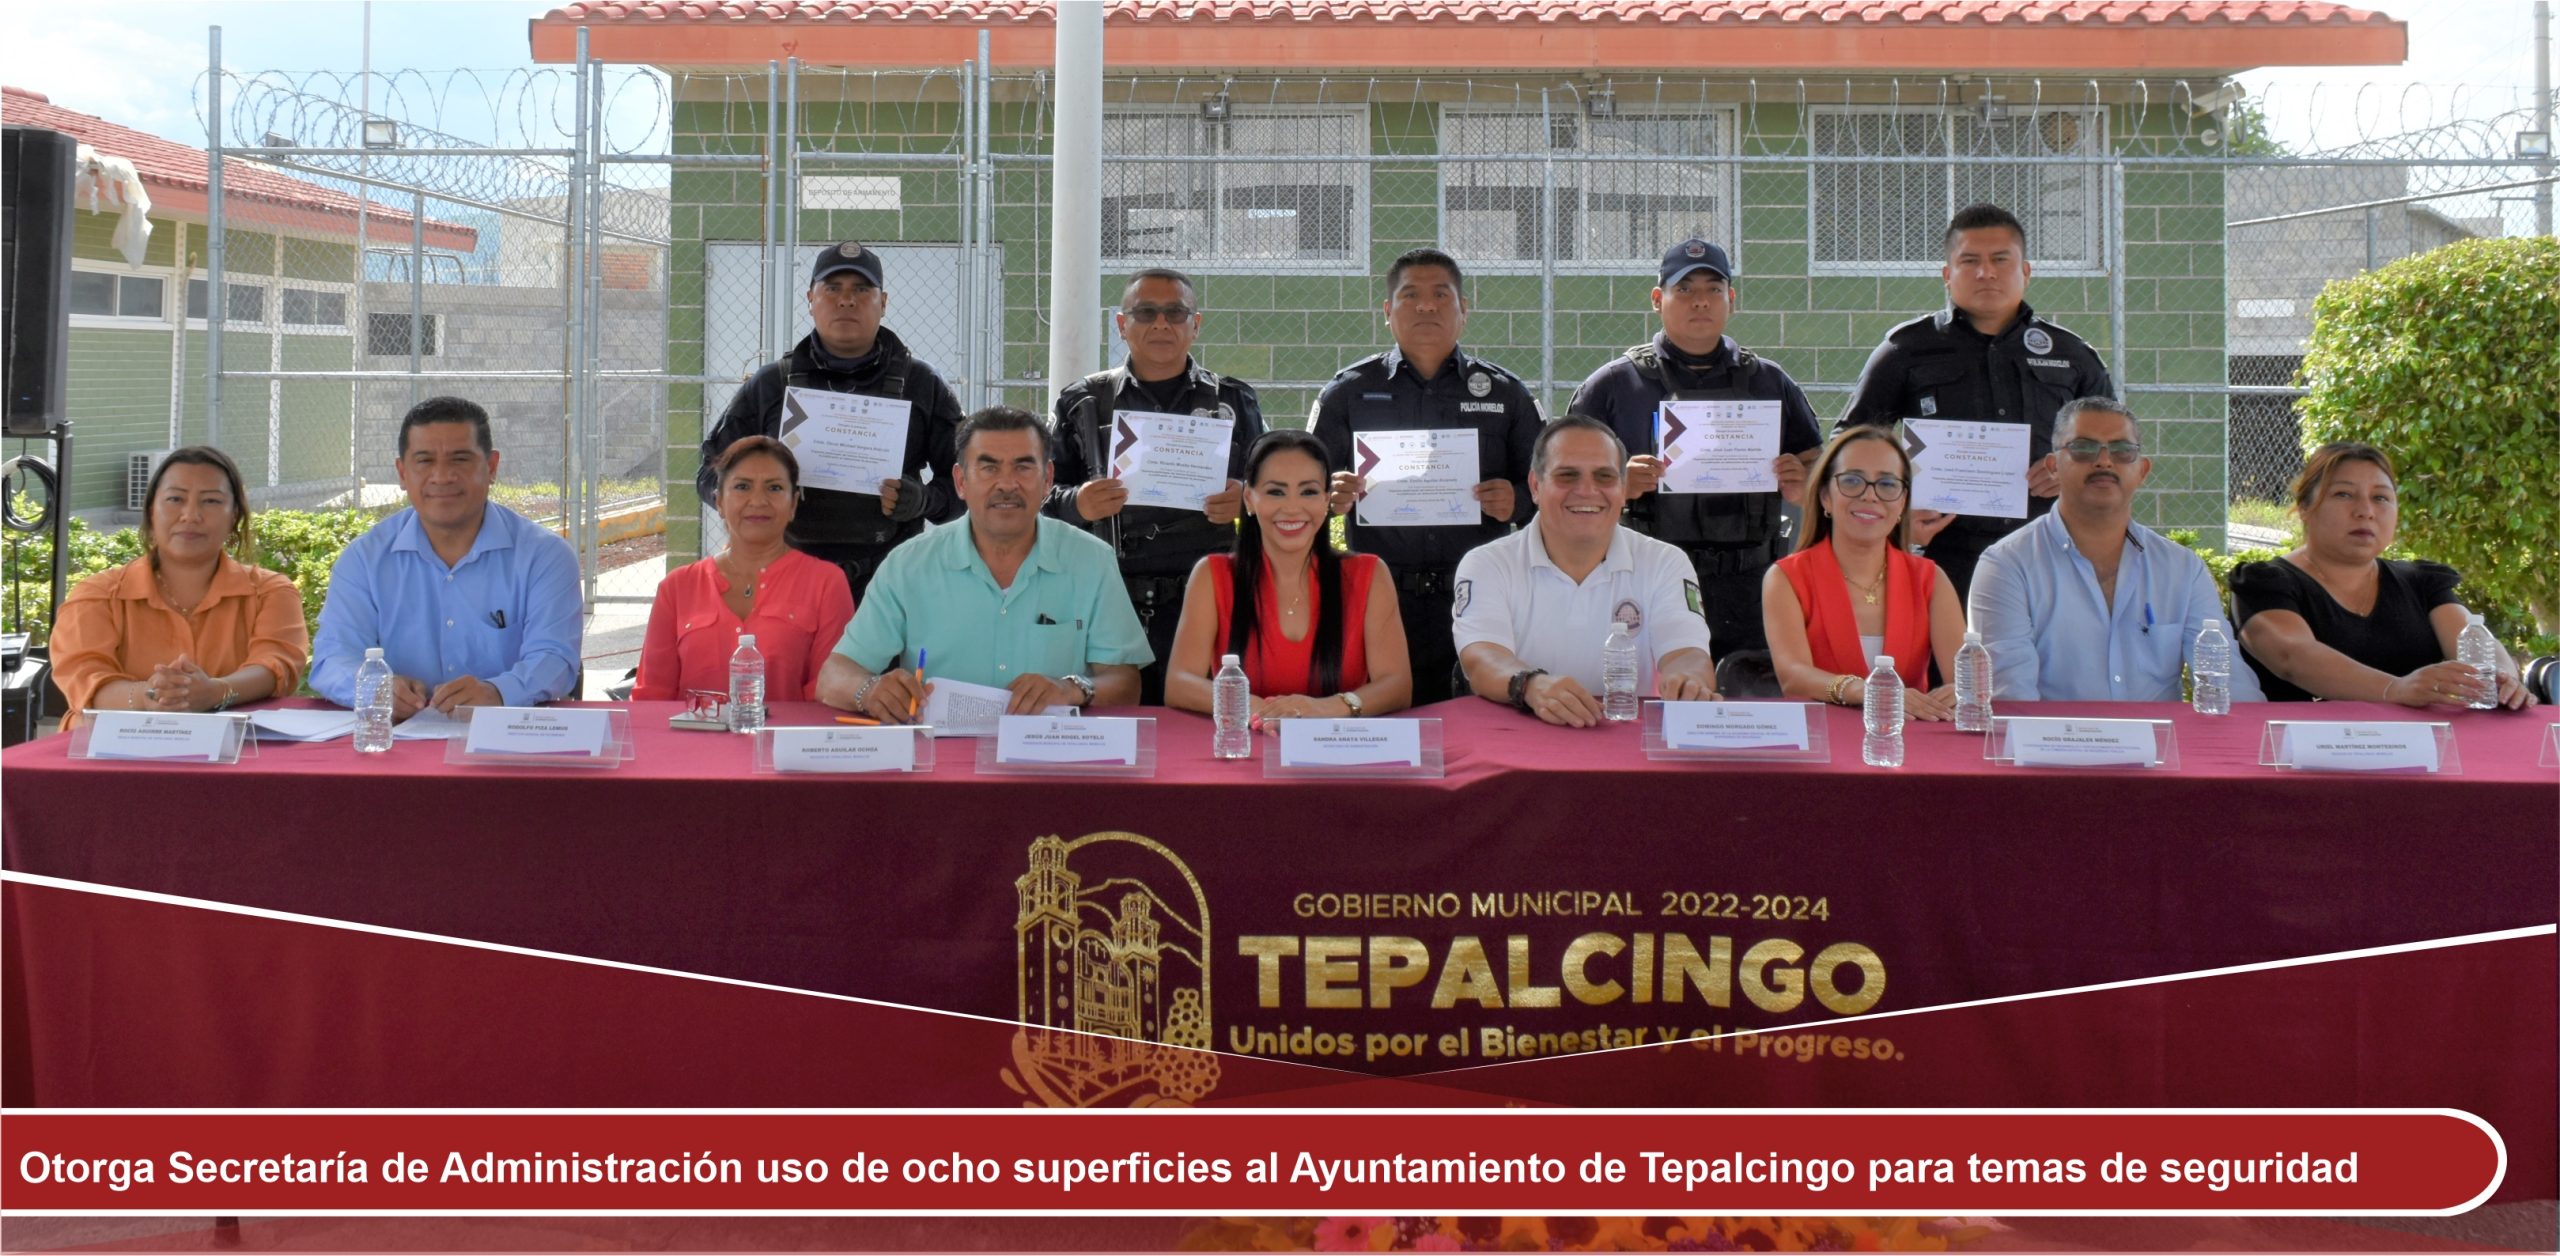 Otorga Secretaría de Administración uso de ocho superficies al Ayuntamiento de Tepalcingo para temas de seguridad